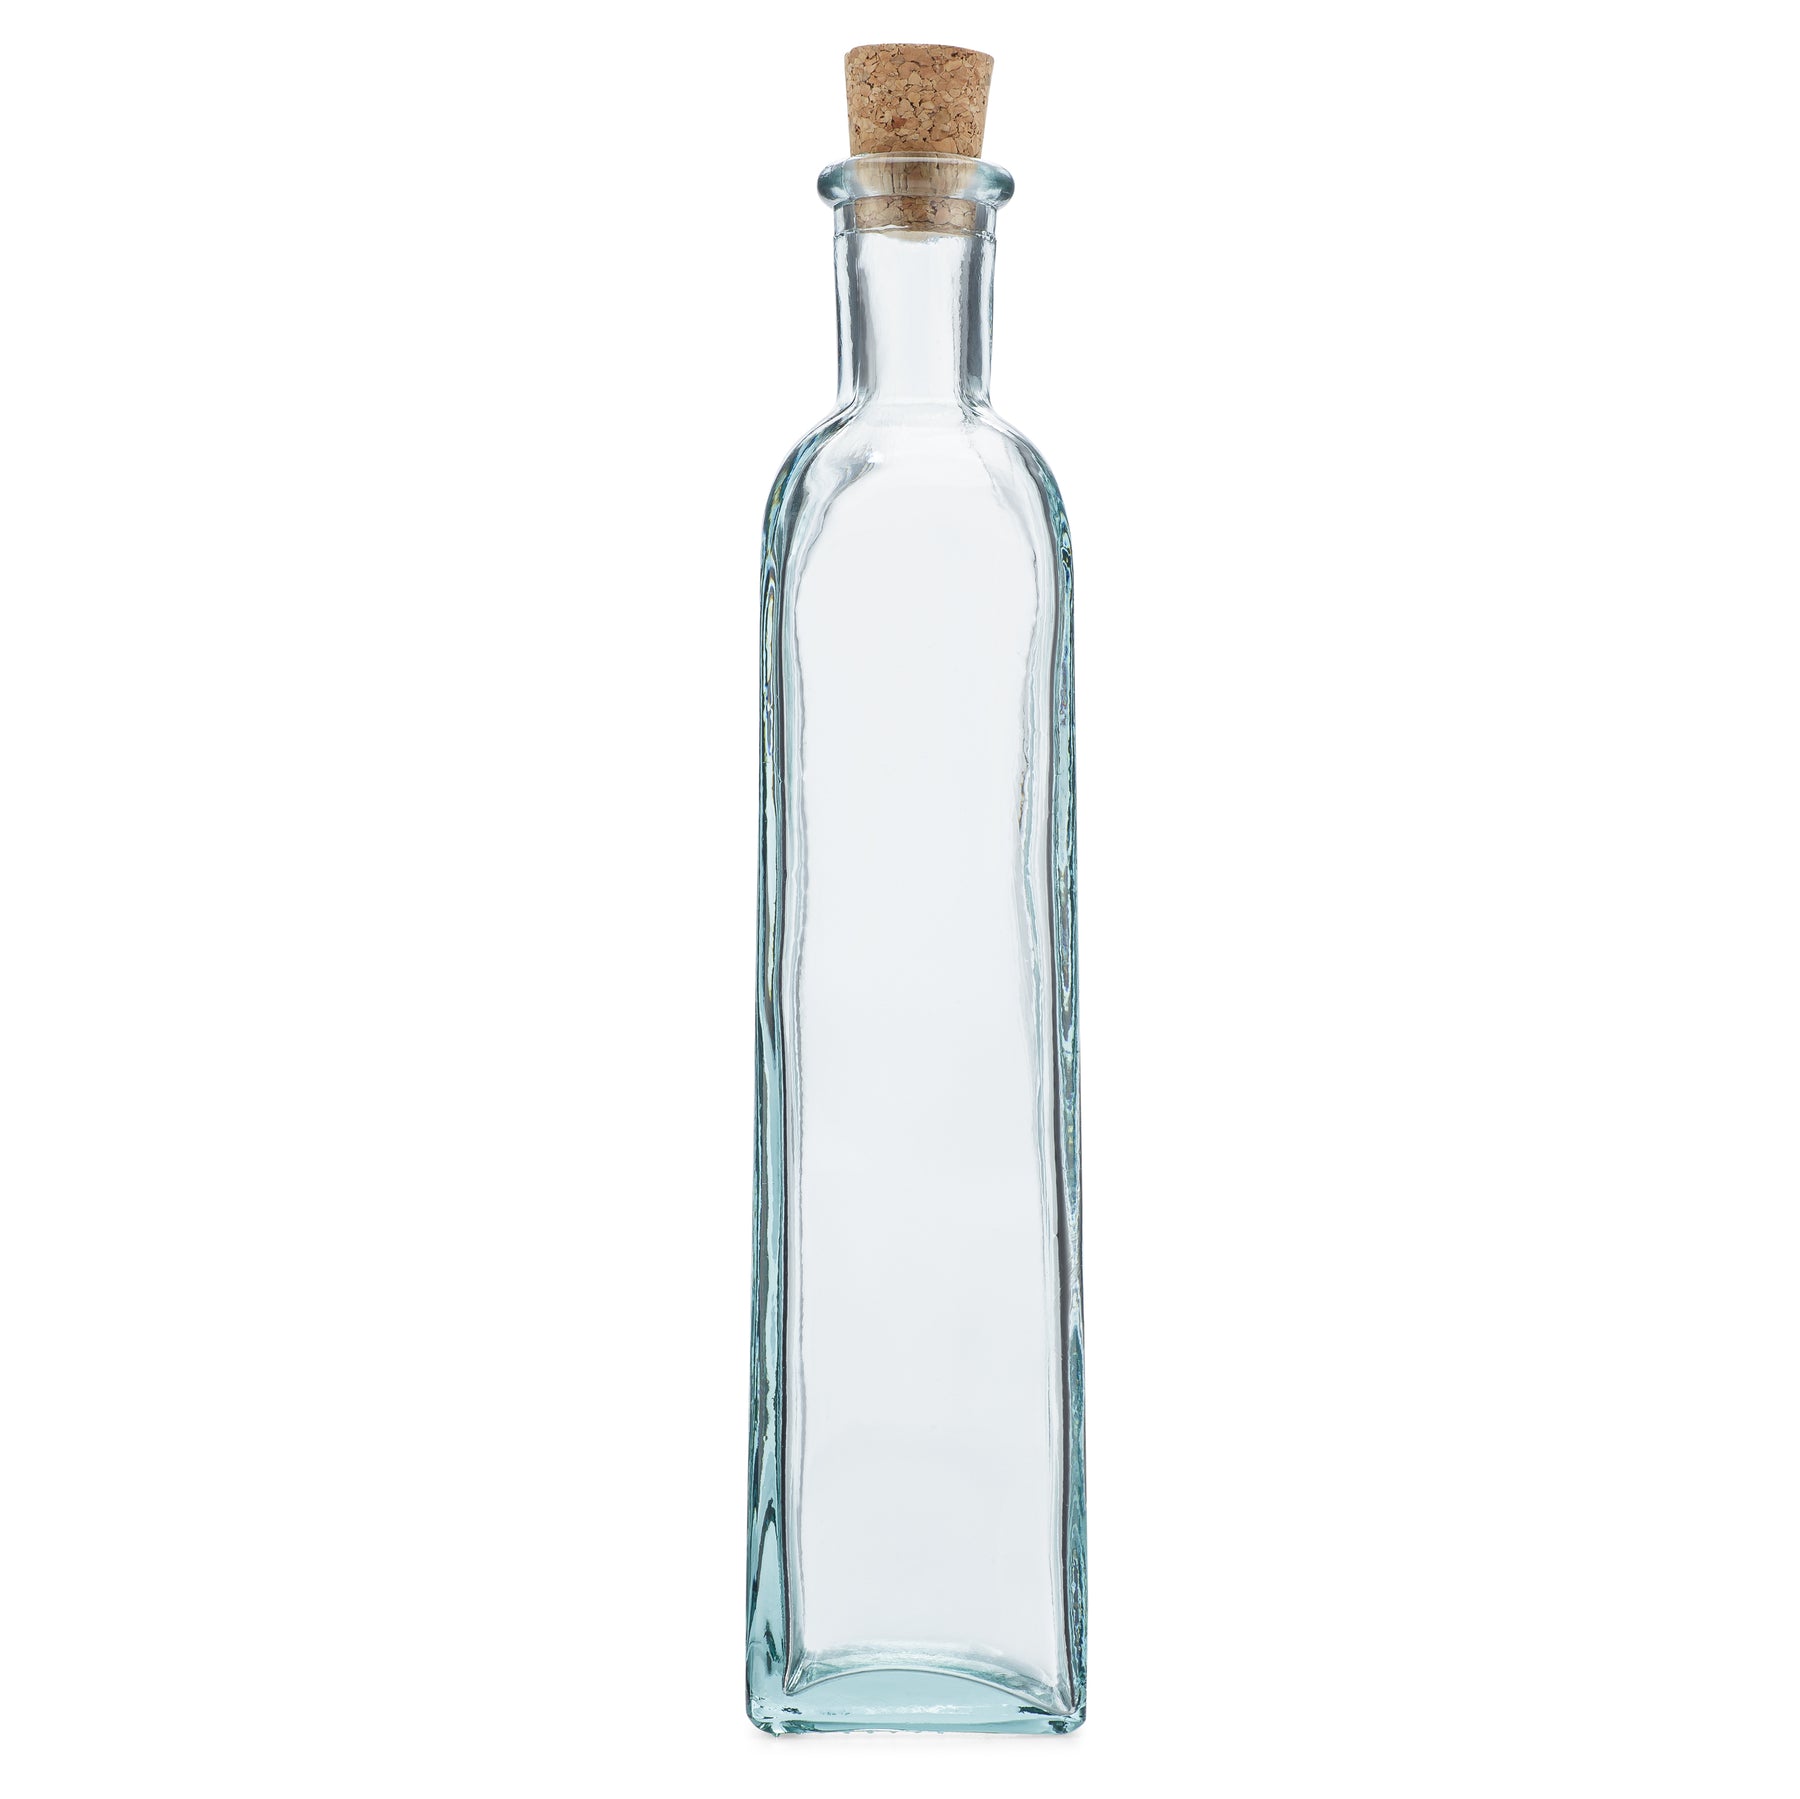 Clear Glass Bottles Cork Lids- 12 Pack Small Green Transparent